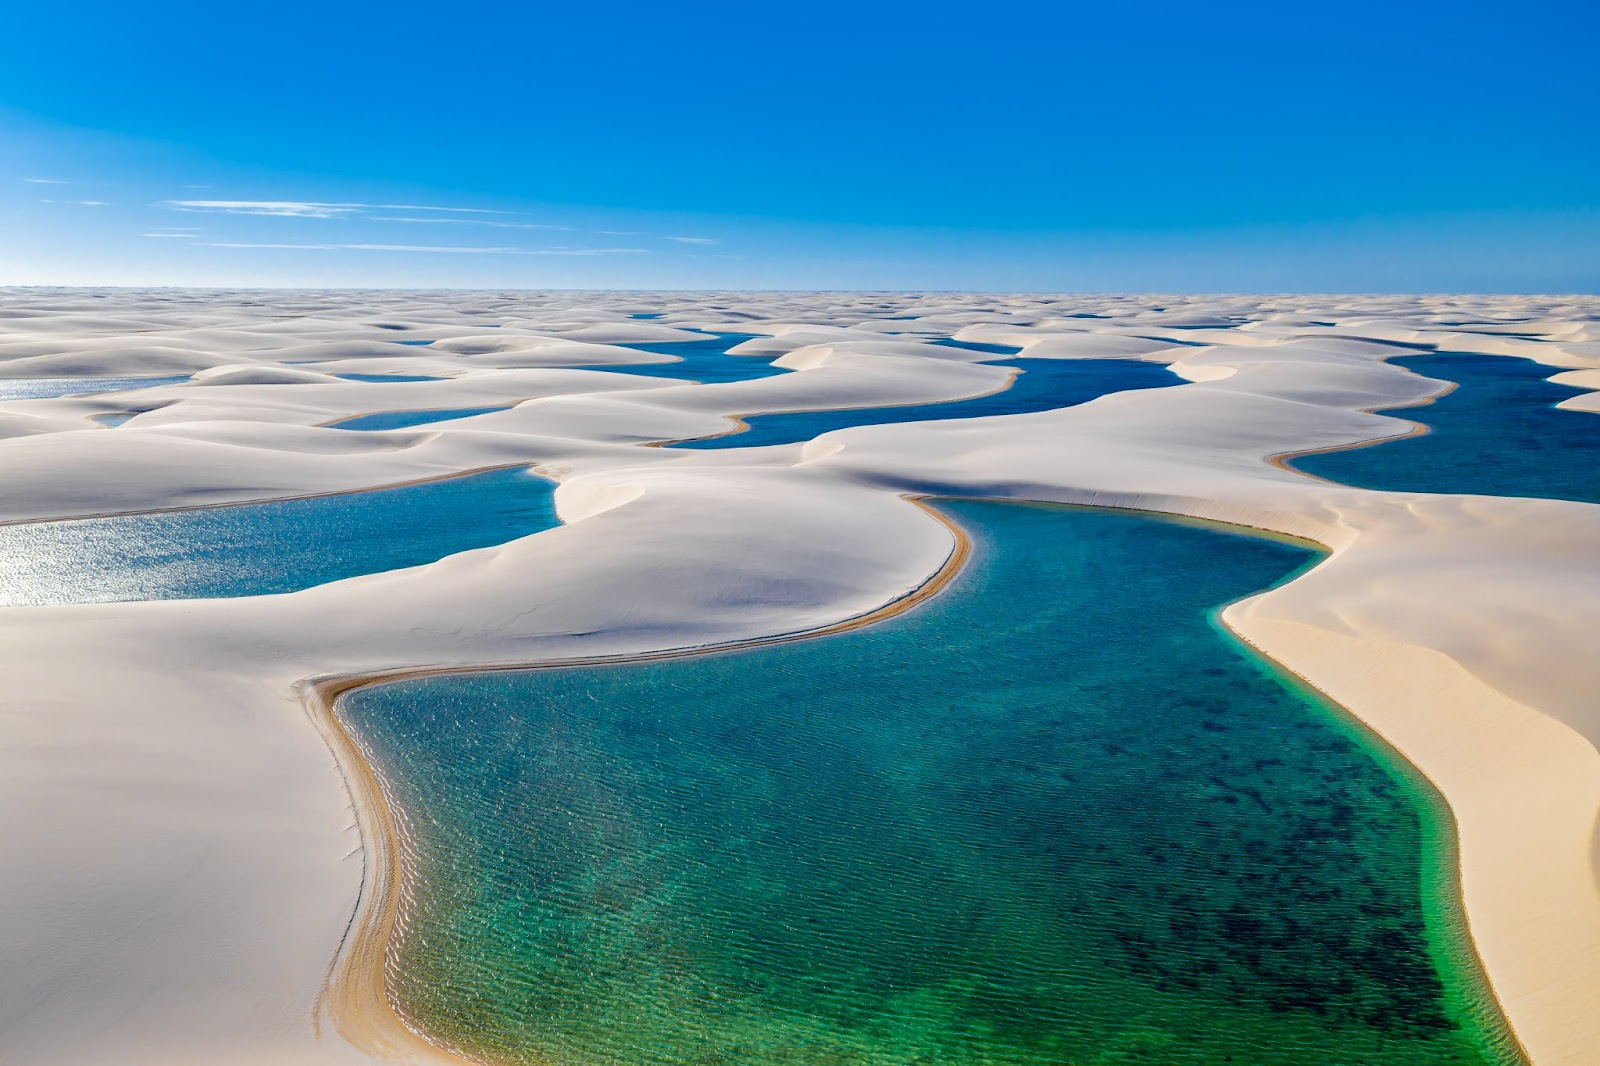 Vista panorâmica dos Lençóis Maranhenses. Grandes dunas de areia branca aparecem intercaladas com lagoas de cor azul intensa. O céu está azul e sem nuvens.